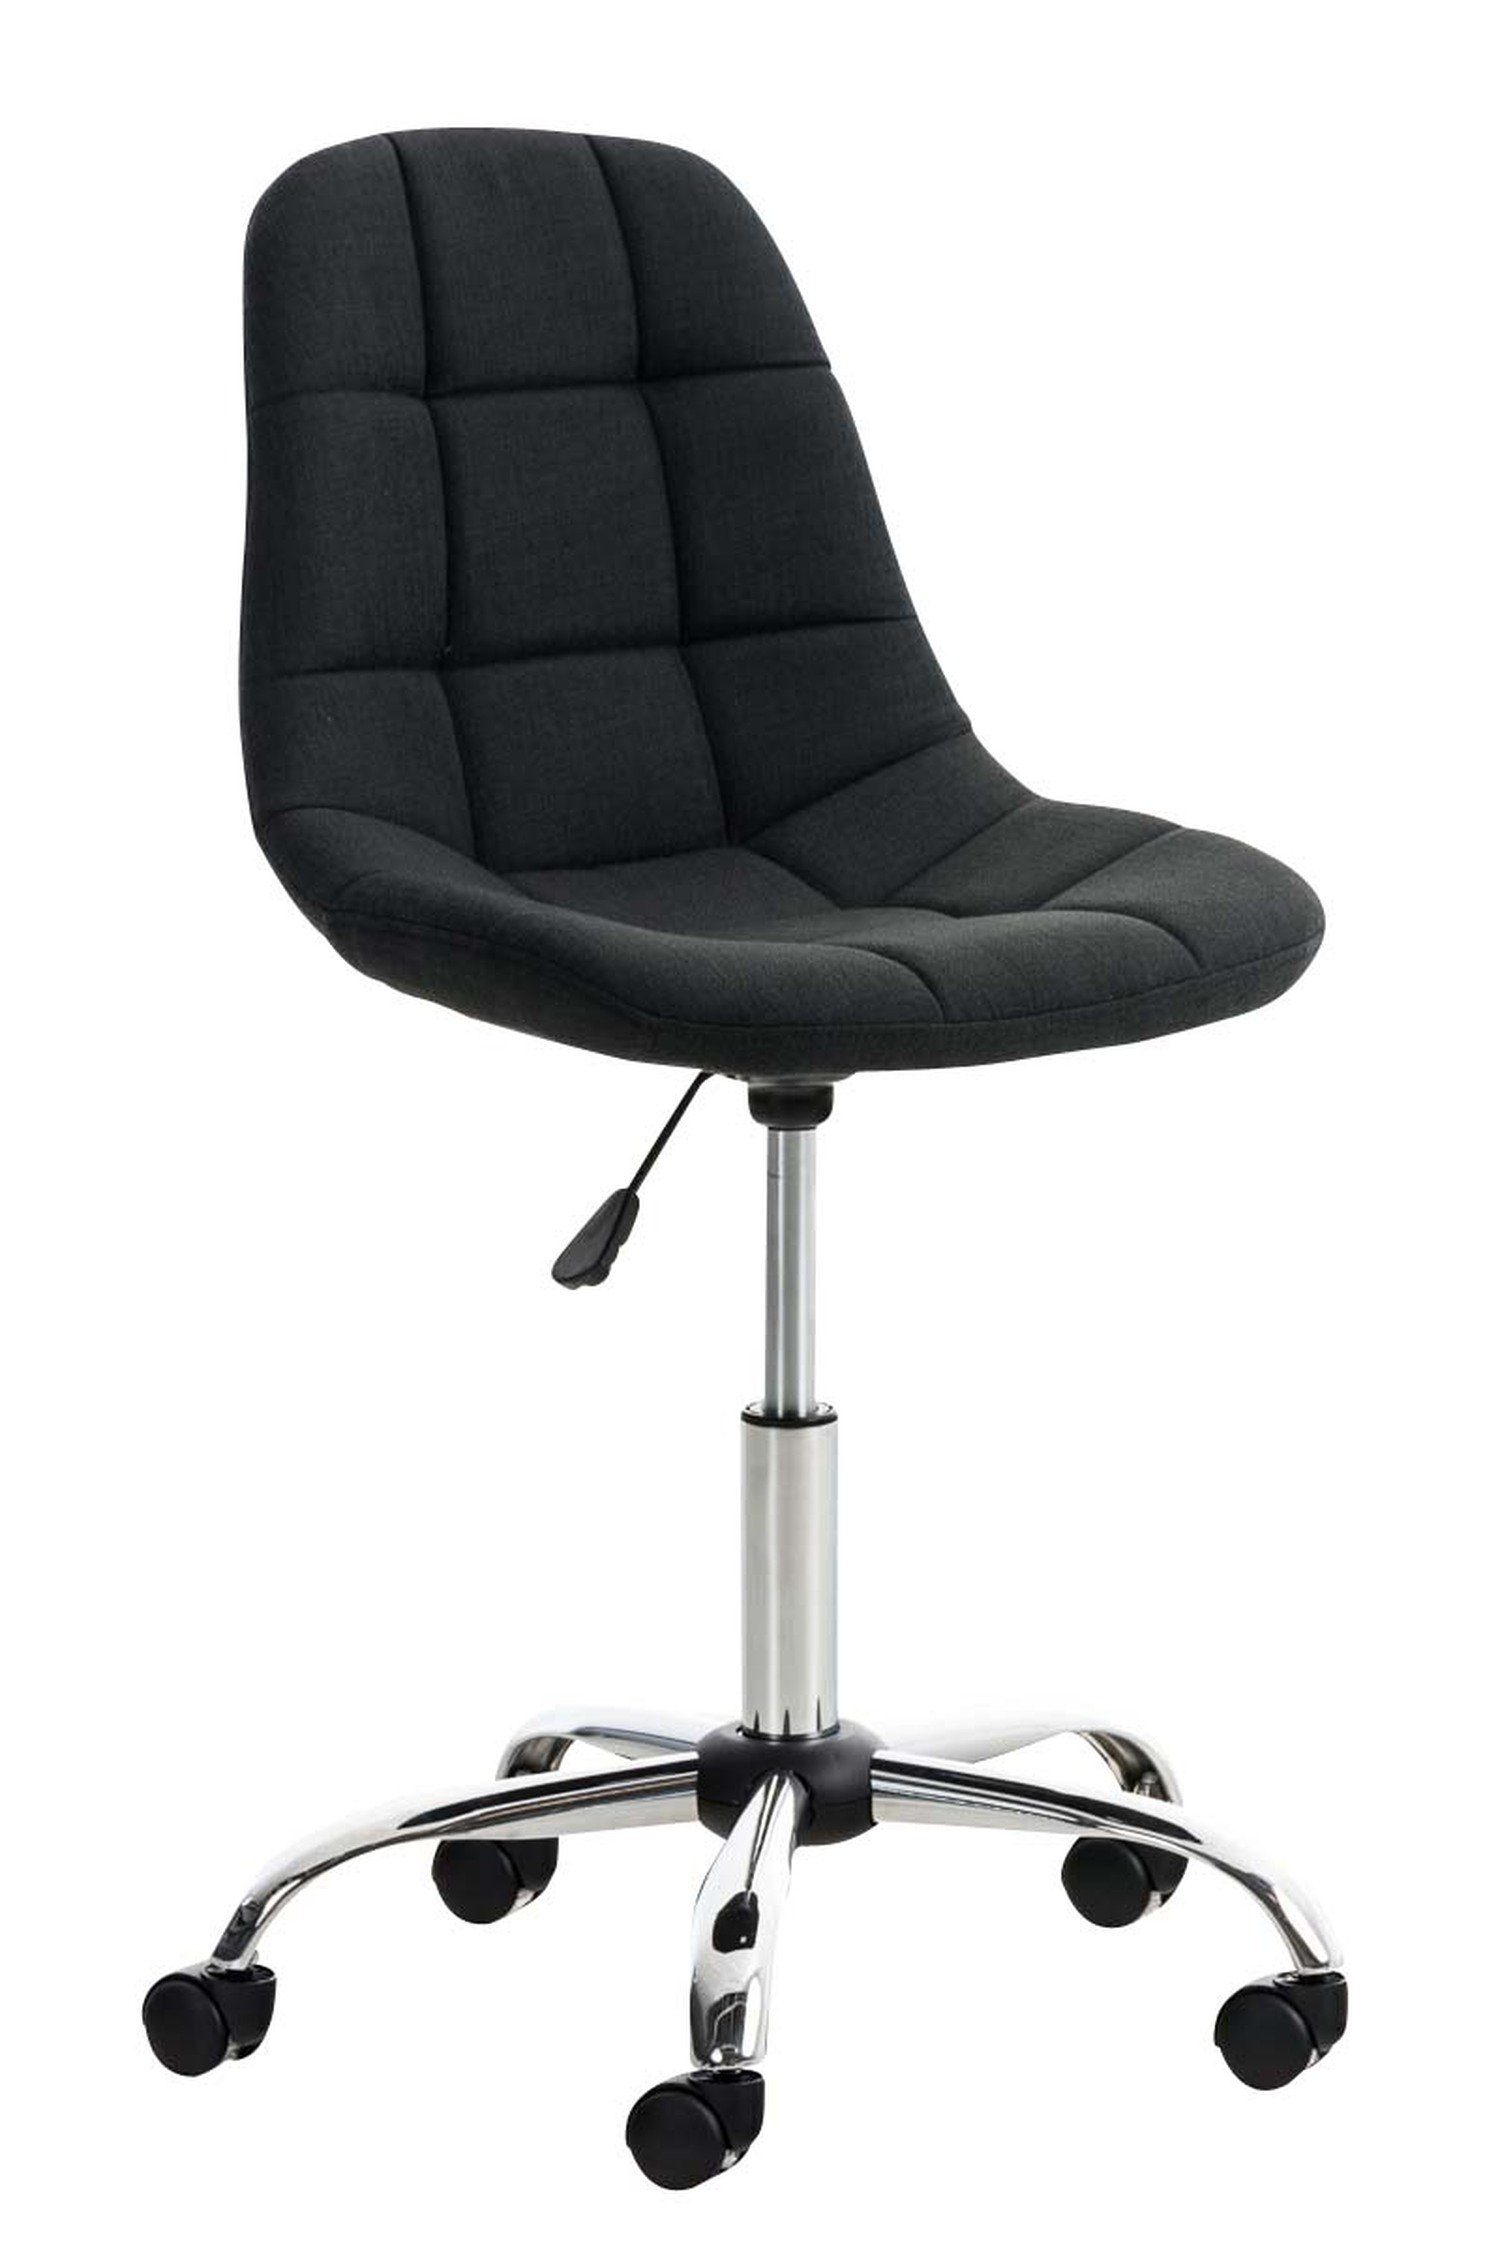 TPFLiving Bürostuhl Emily mit bequemer Rückenlehne - höhenverstellbar und 360° drehbar (Schreibtischstuhl, Drehstuhl, Chefsessel, Konferenzstuhl), Gestell: Metall chrom - Sitzfläche: Stoff schwarz